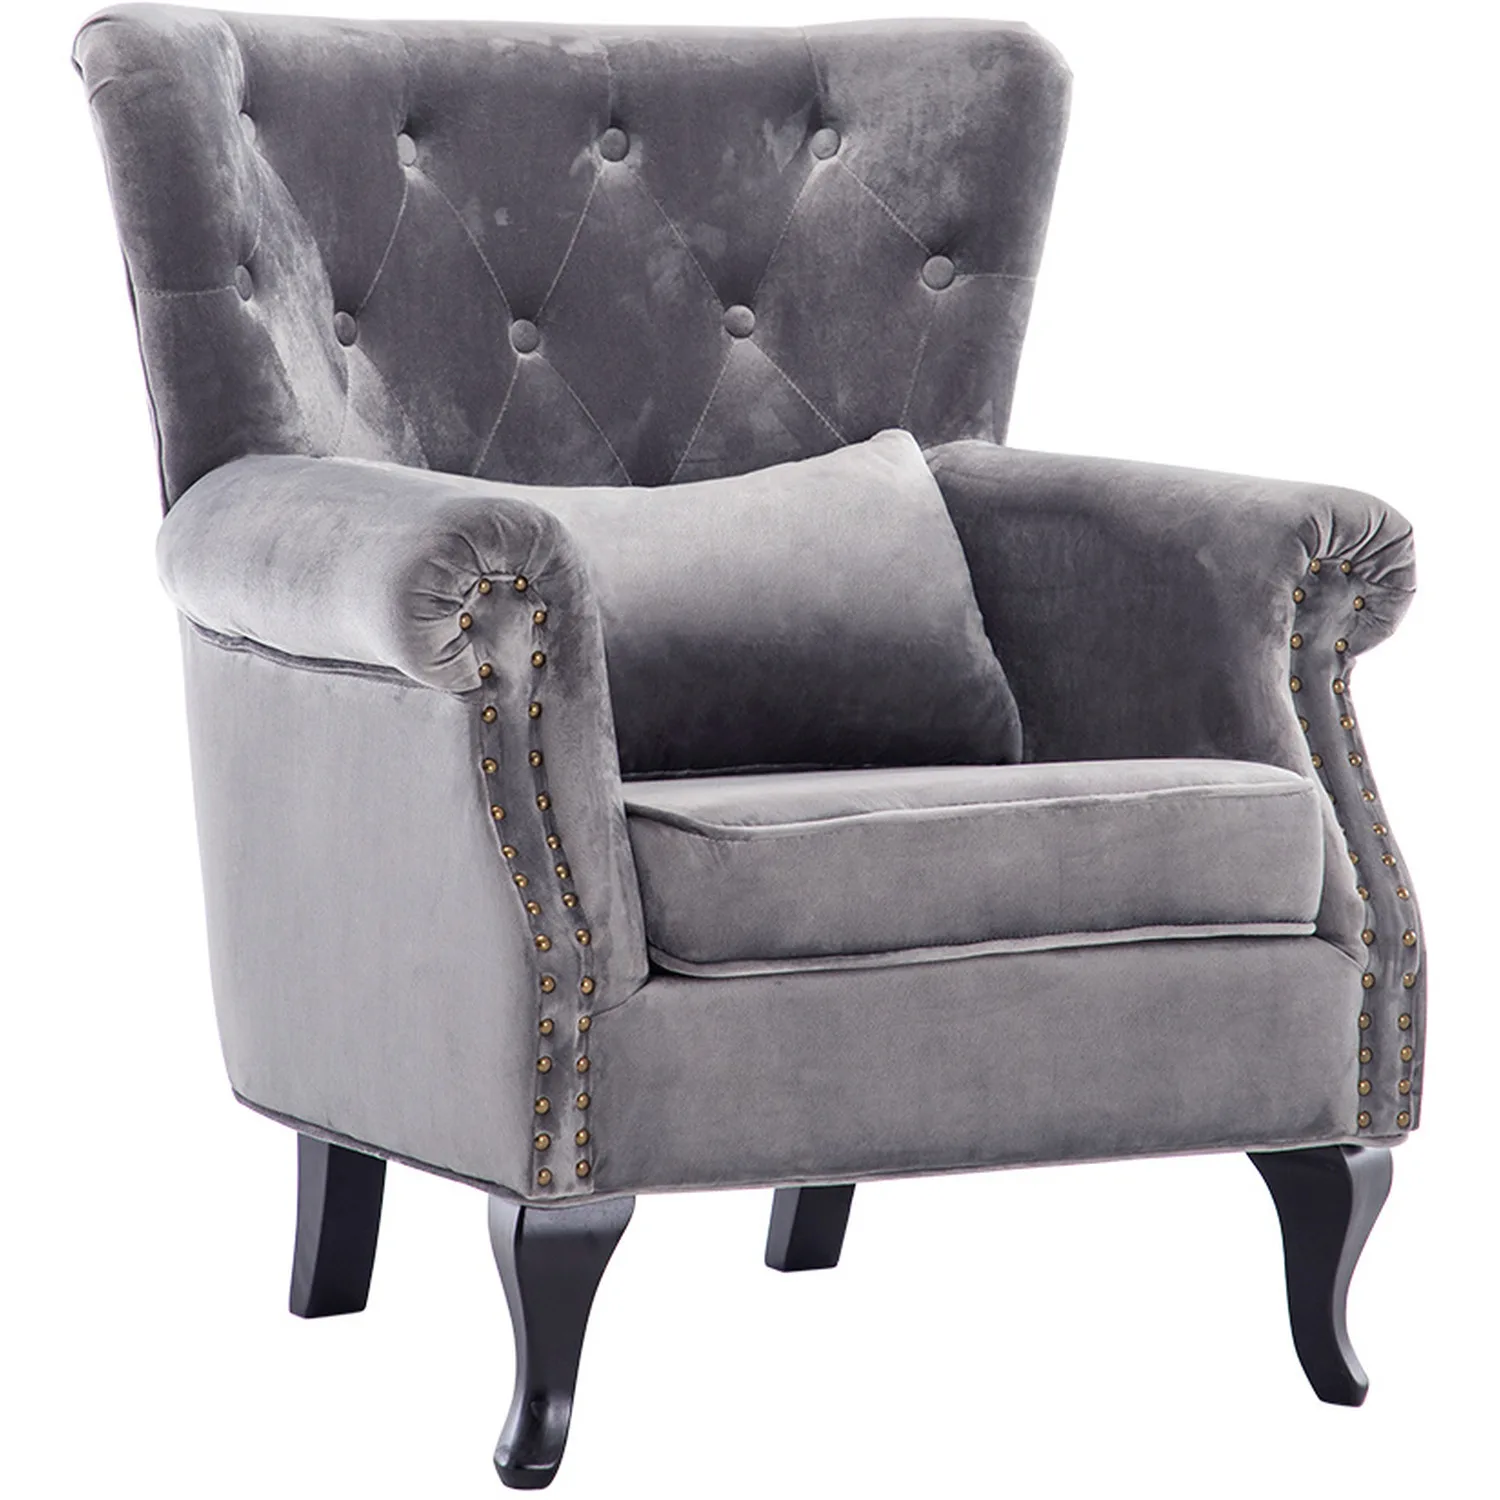 Fireside velvet armchair with cushion